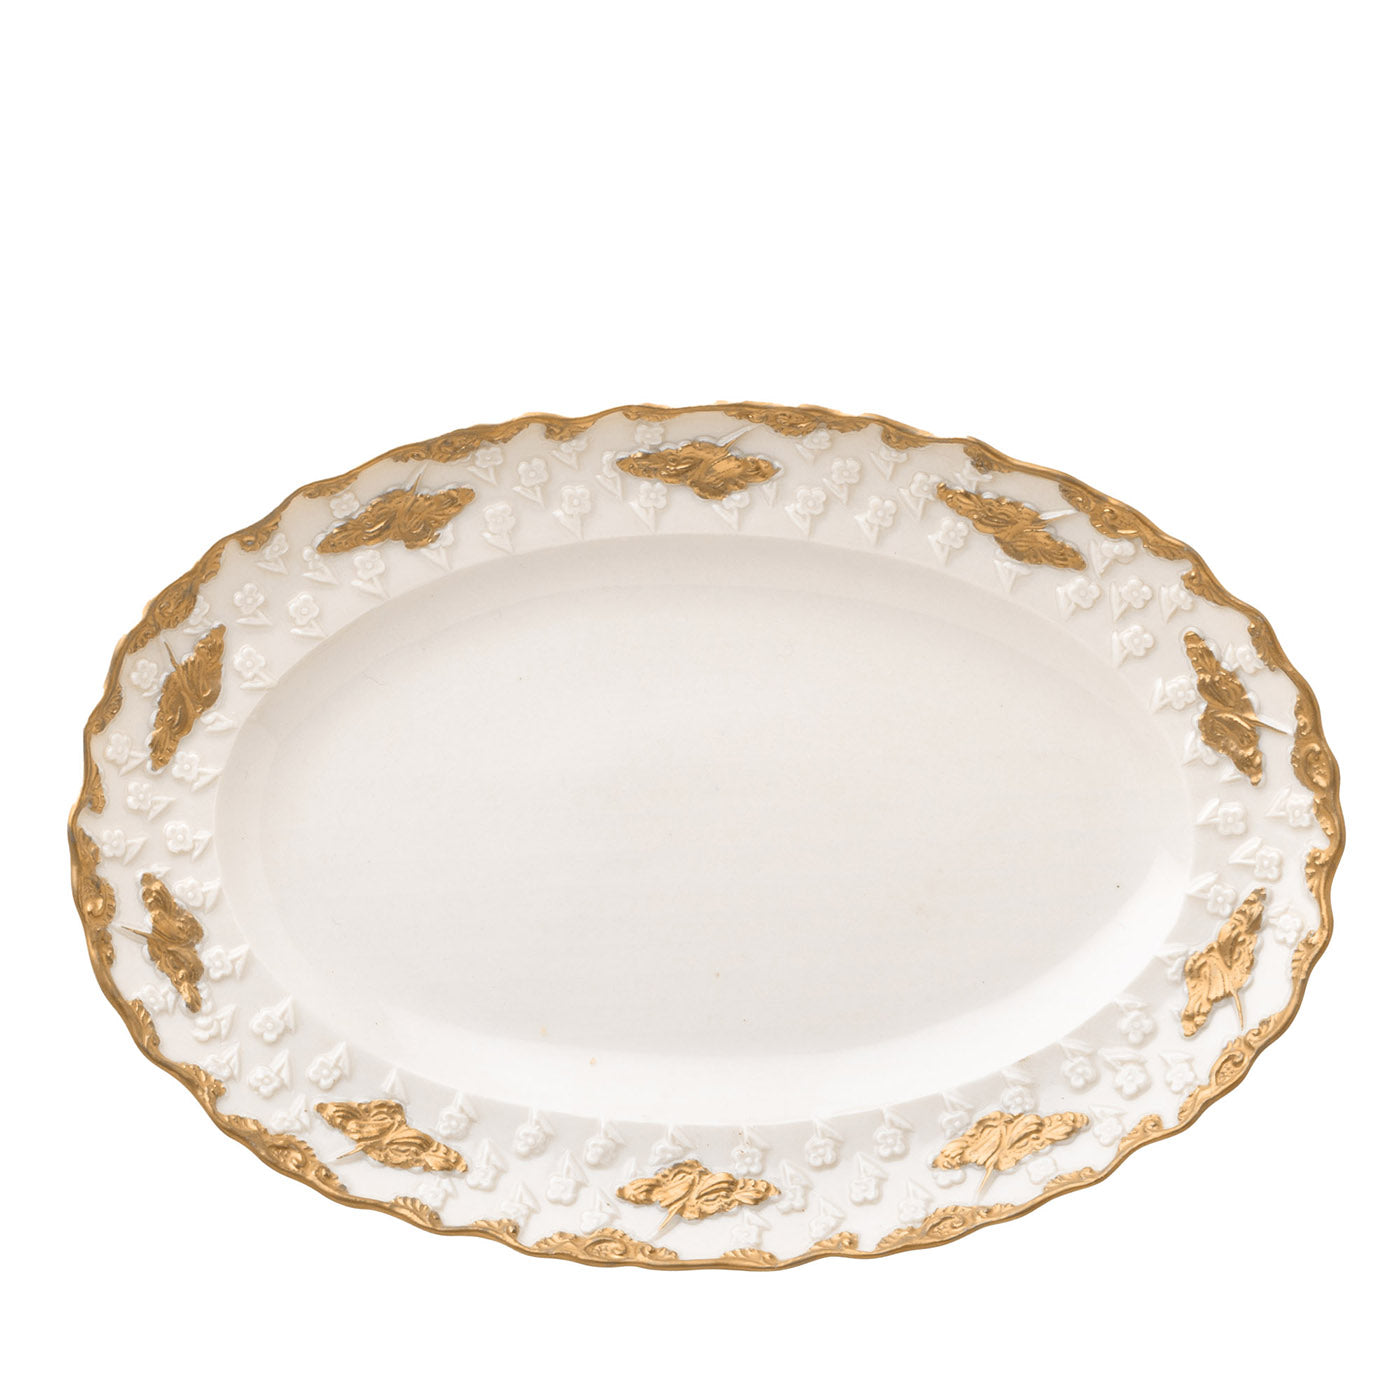 Lucia Grand plat de service ovale blanc et or - Vue principale